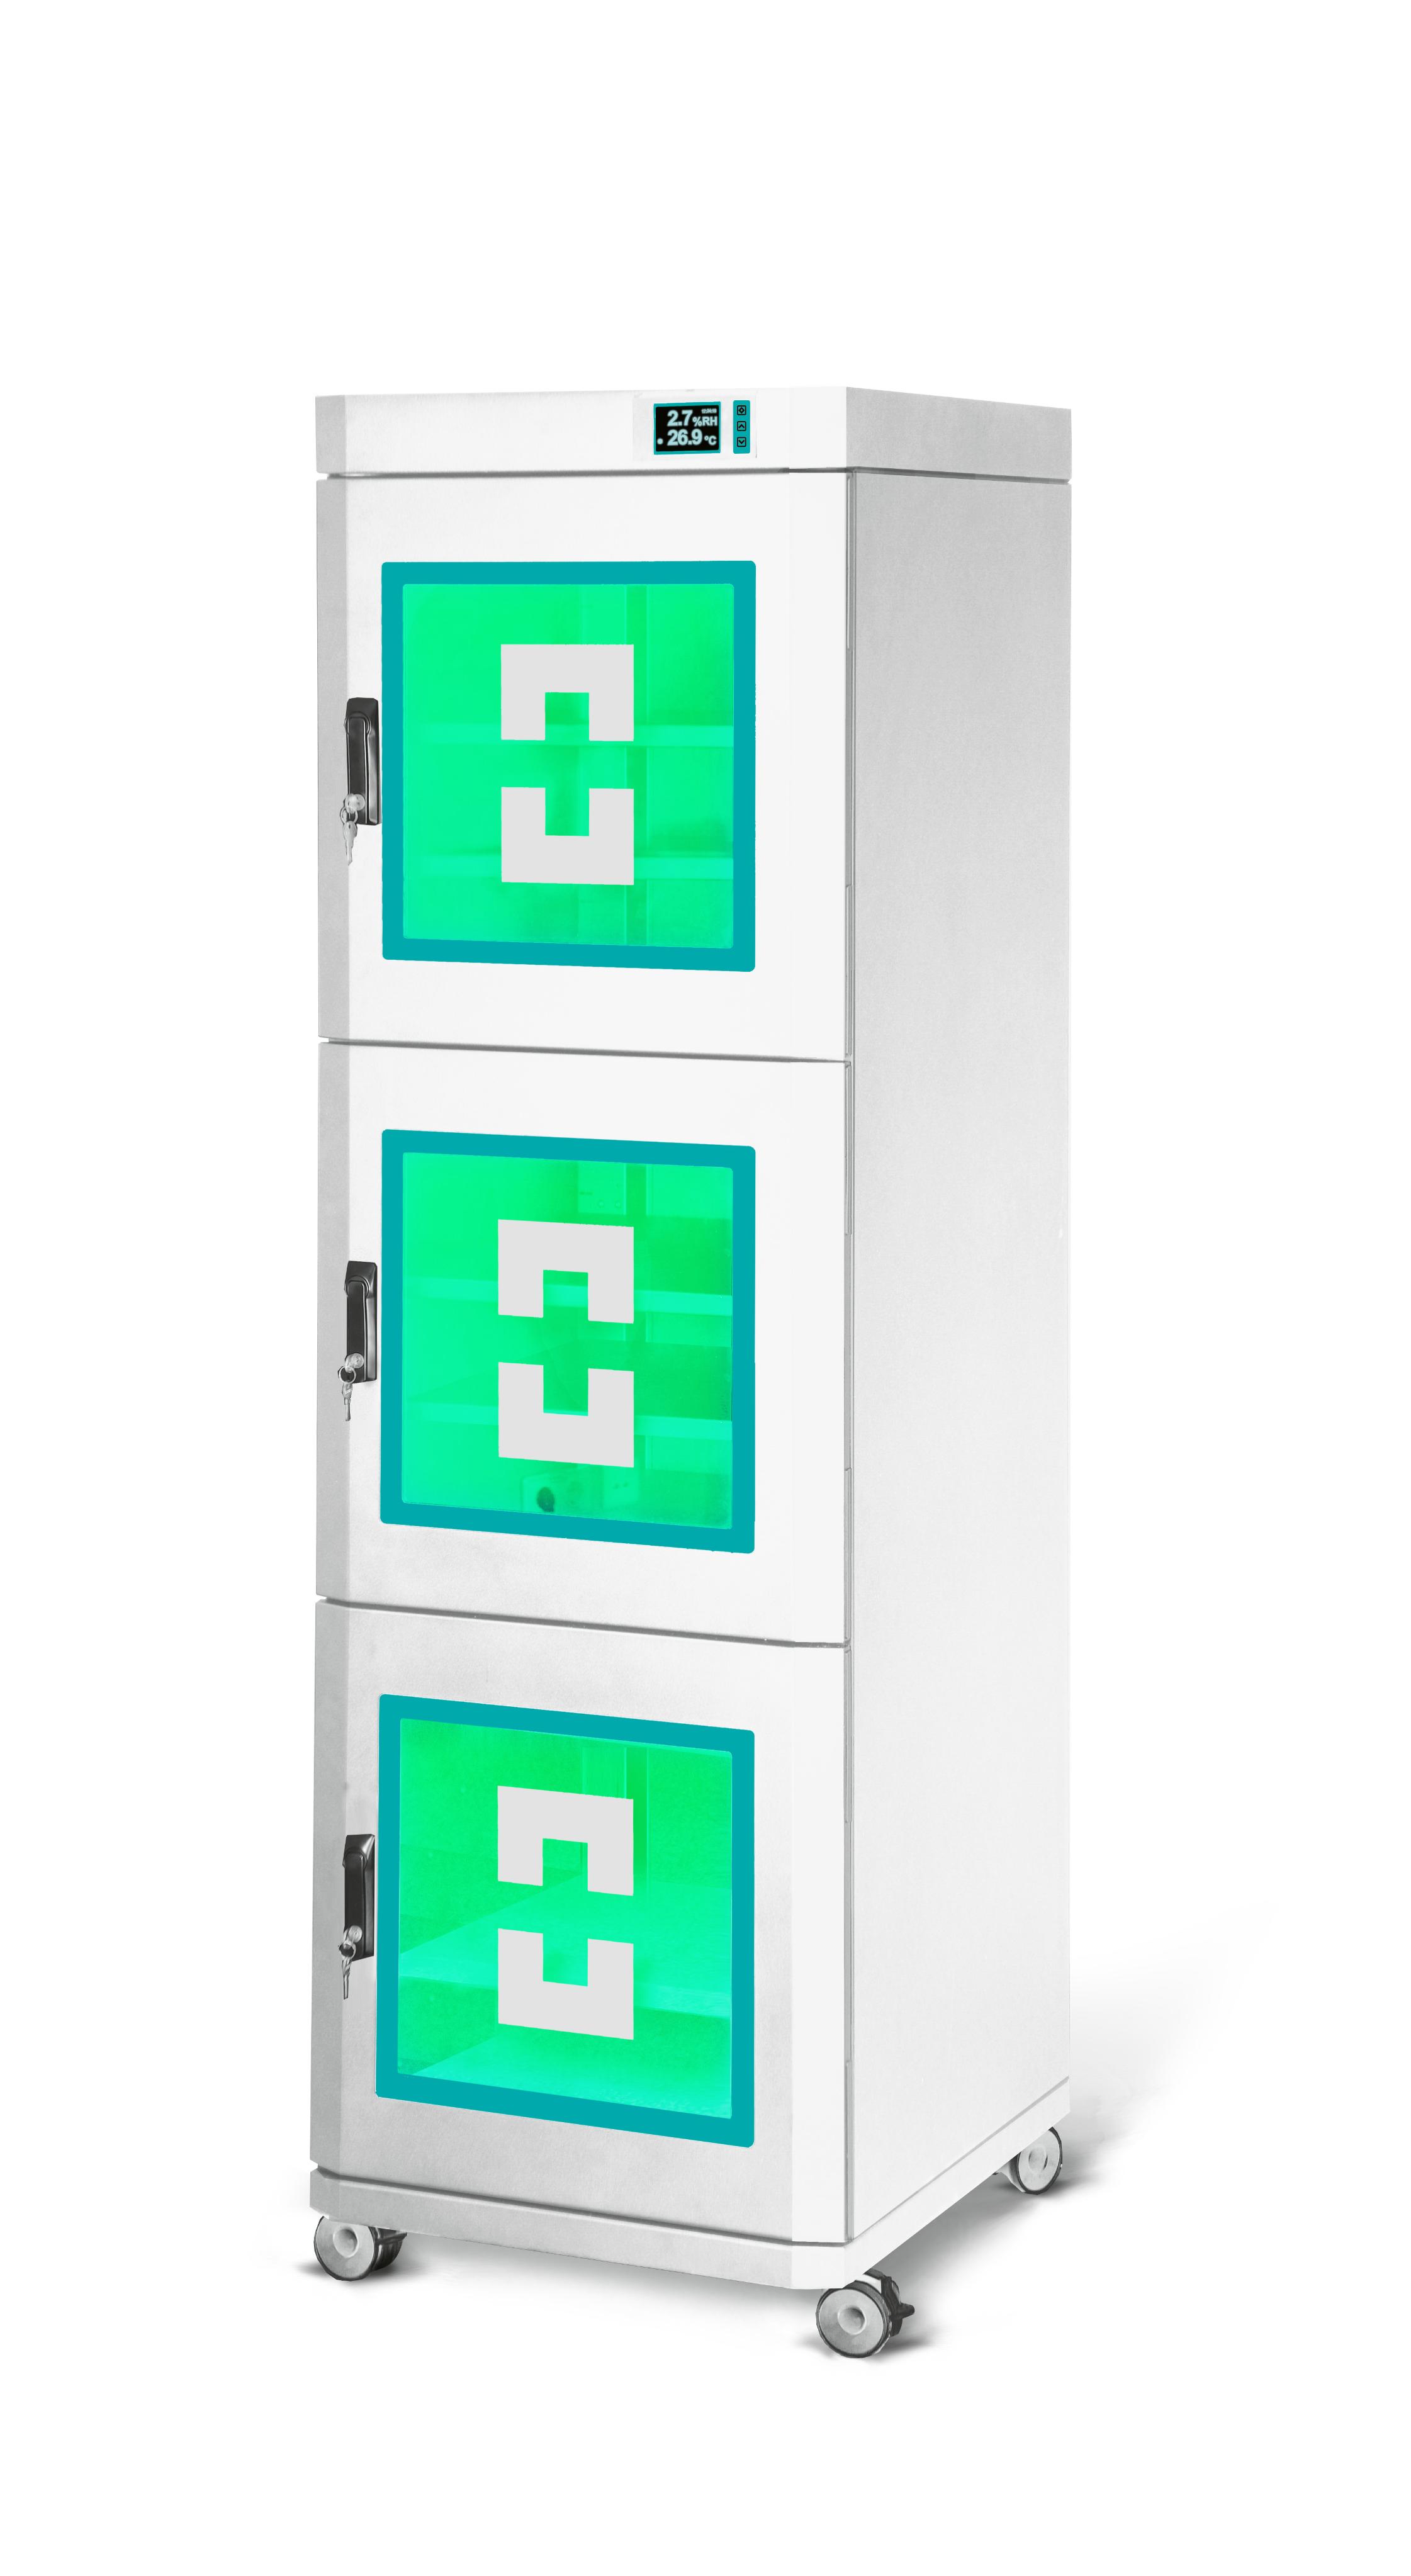 Шкаф сухого хранения с опцией внутренней индикаторной светодиодной подсветки - режим хранения